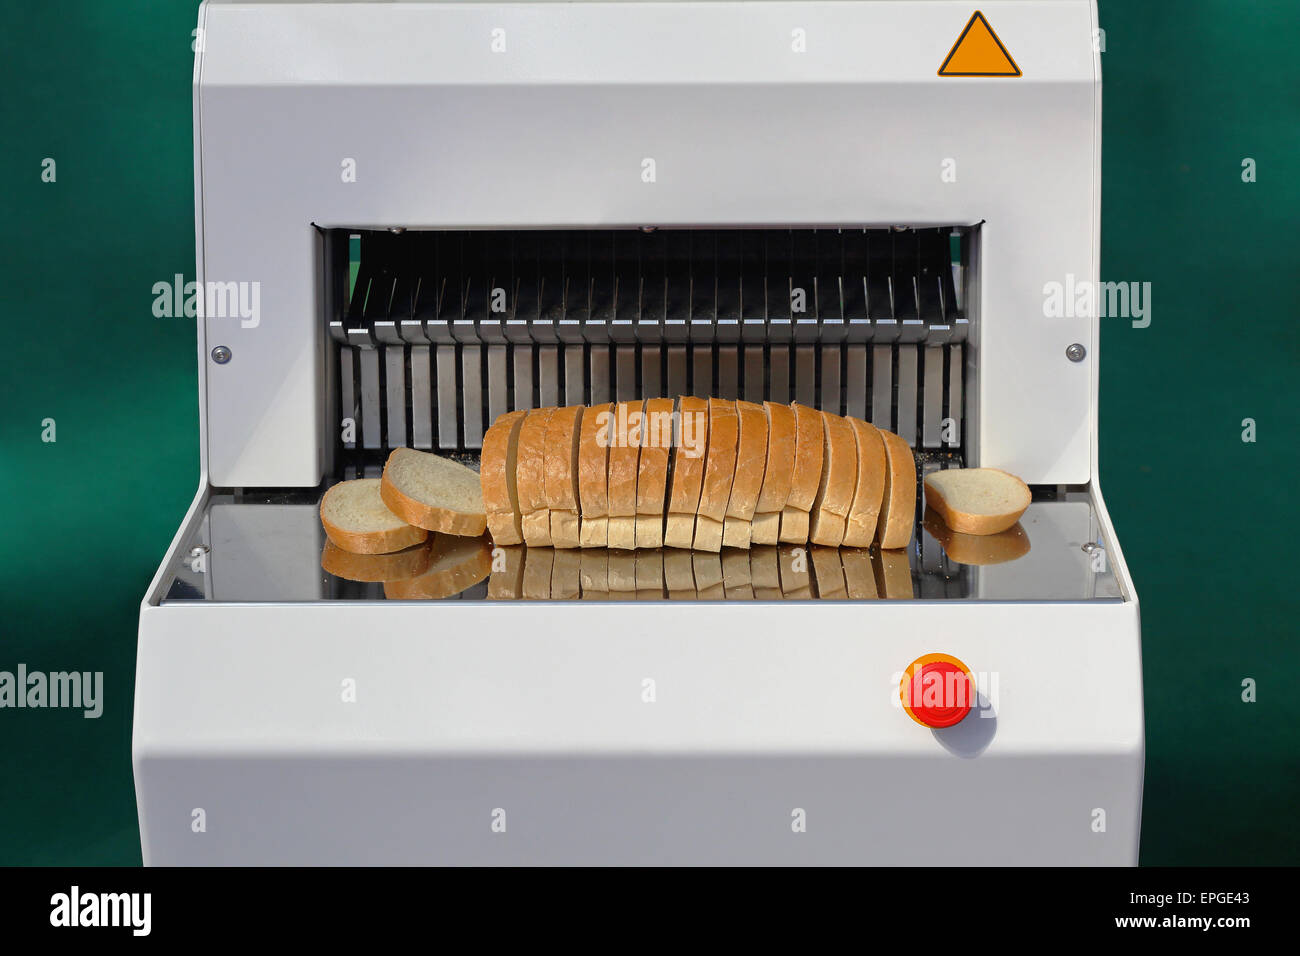 Bread slicer immagini e fotografie stock ad alta risoluzione - Alamy